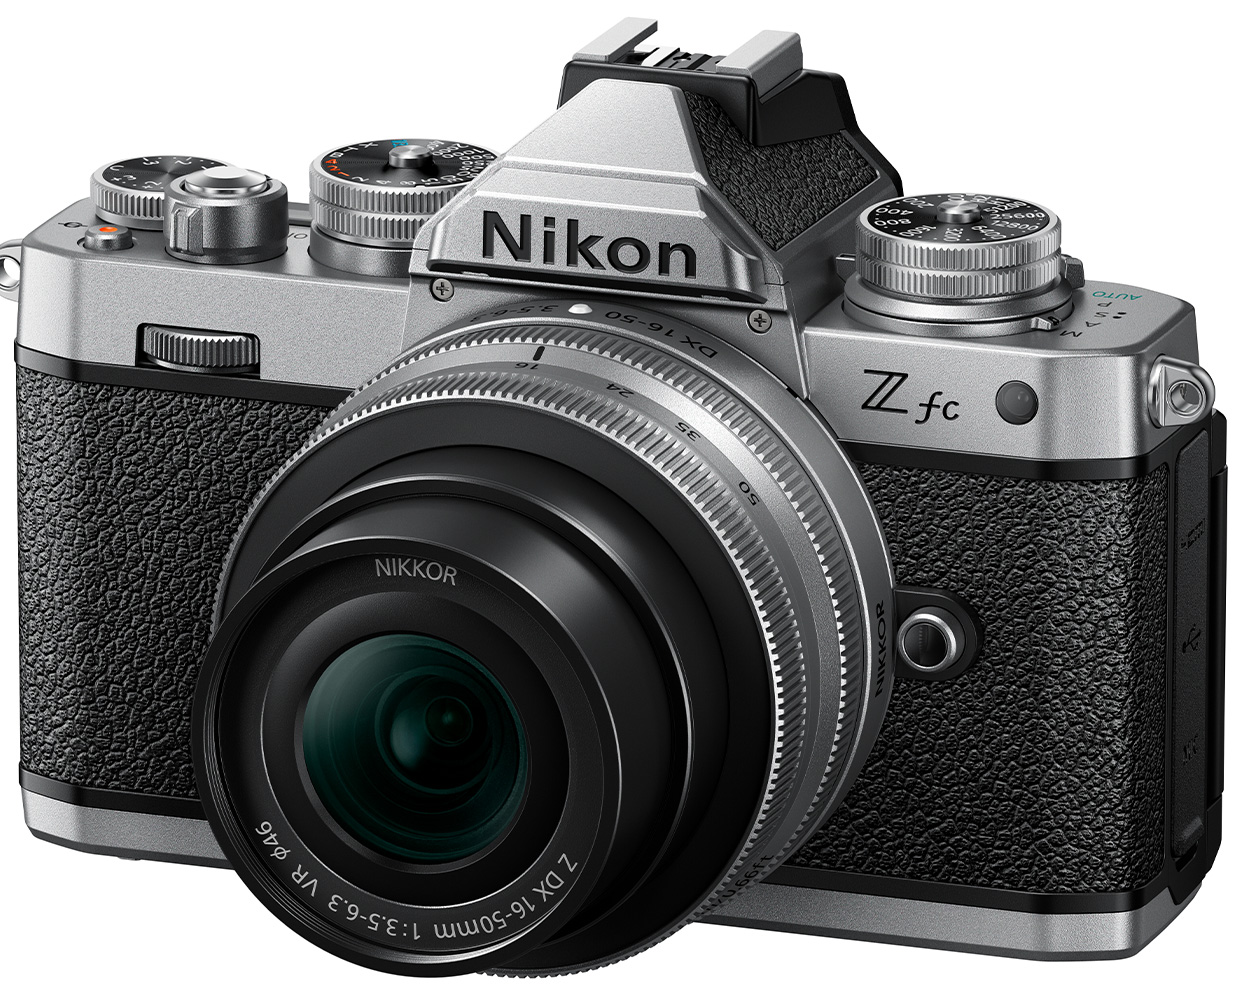 ニコンDXフォーマットミラーレスカメラ「ニコン Z fc」を発売